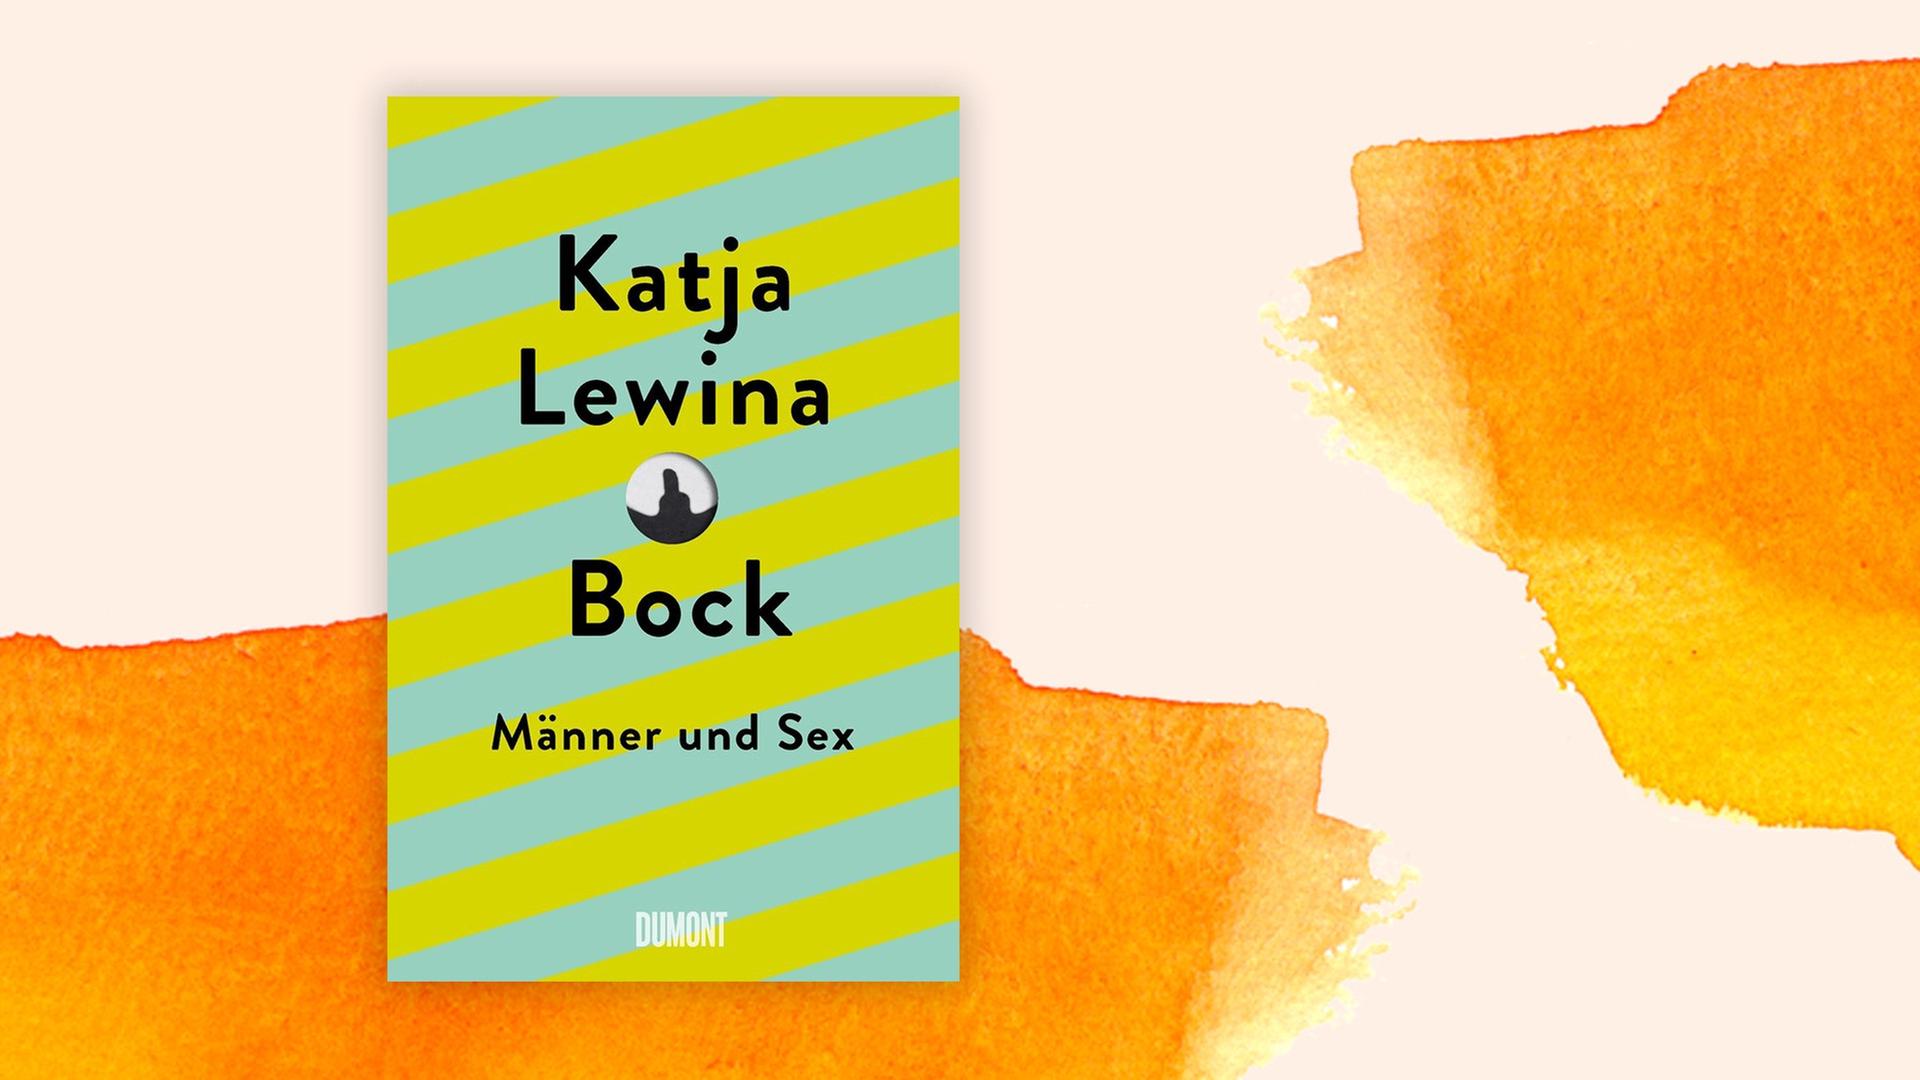 Cover von Katja Lewinas Buch "Bock. Männer und Sex" auf orangem Hintergrund